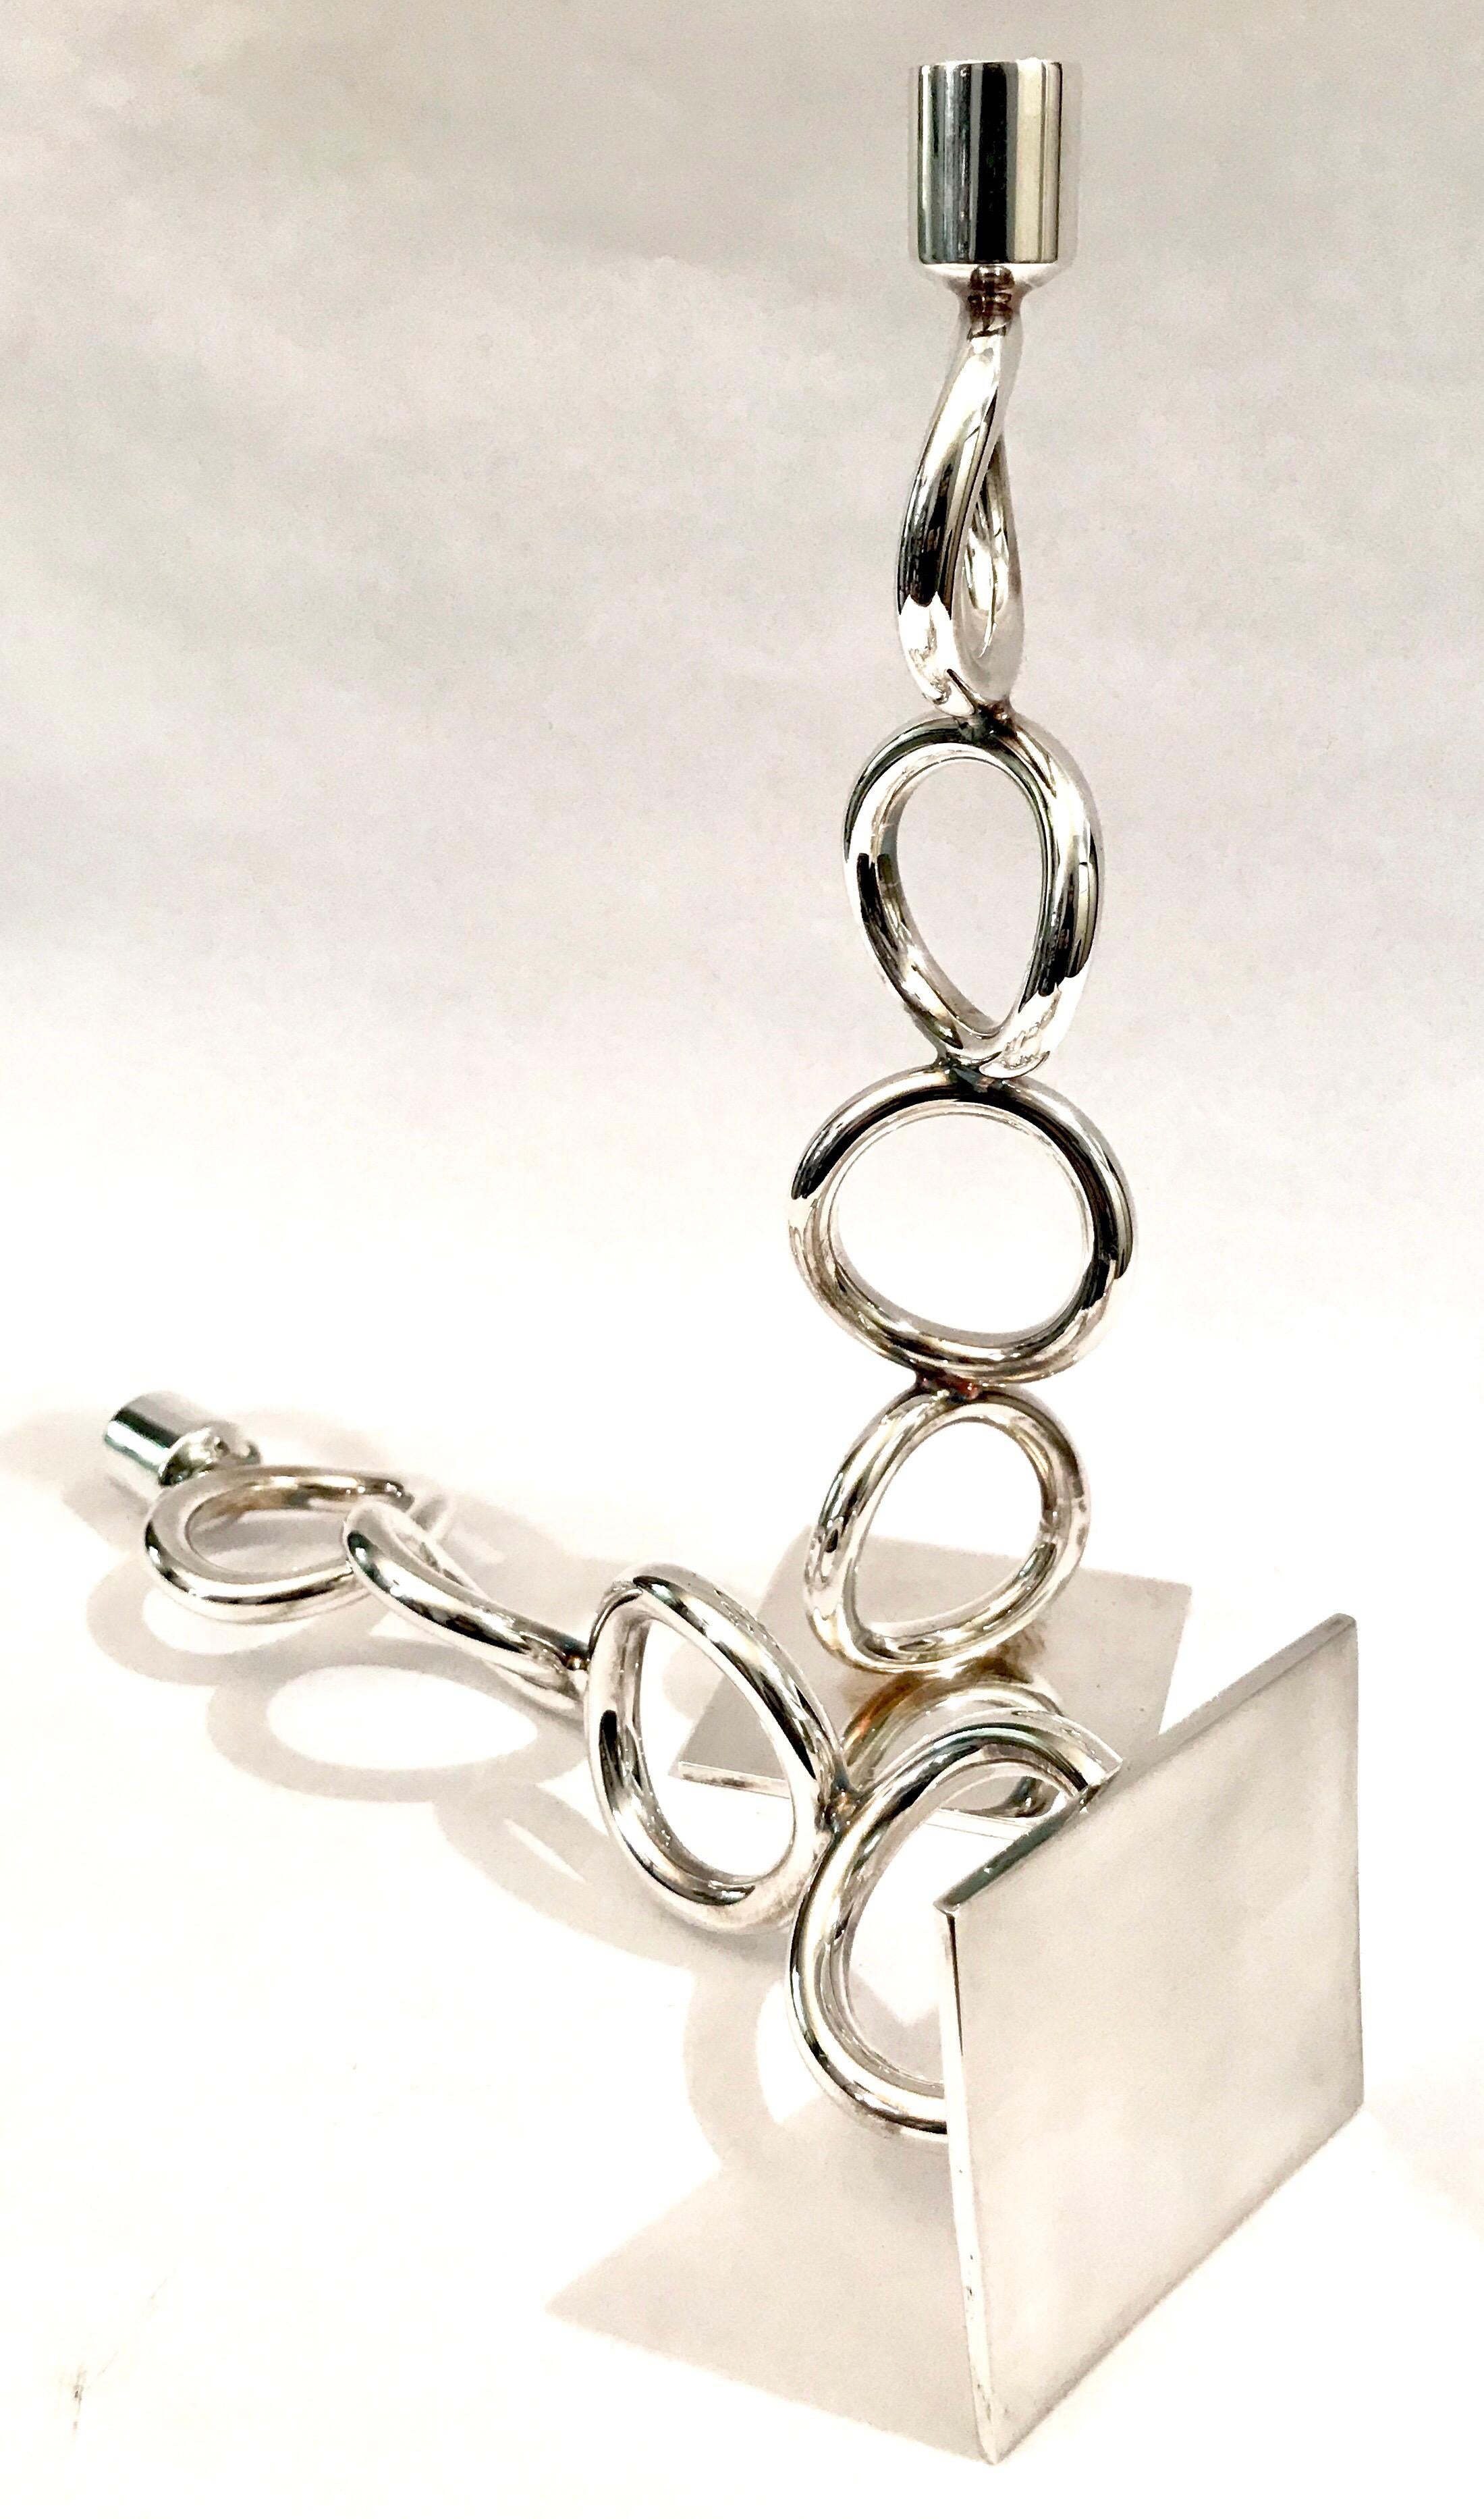 Christofle Silver Plated Vertigo Four-Ring Candlesticks For Sale 8